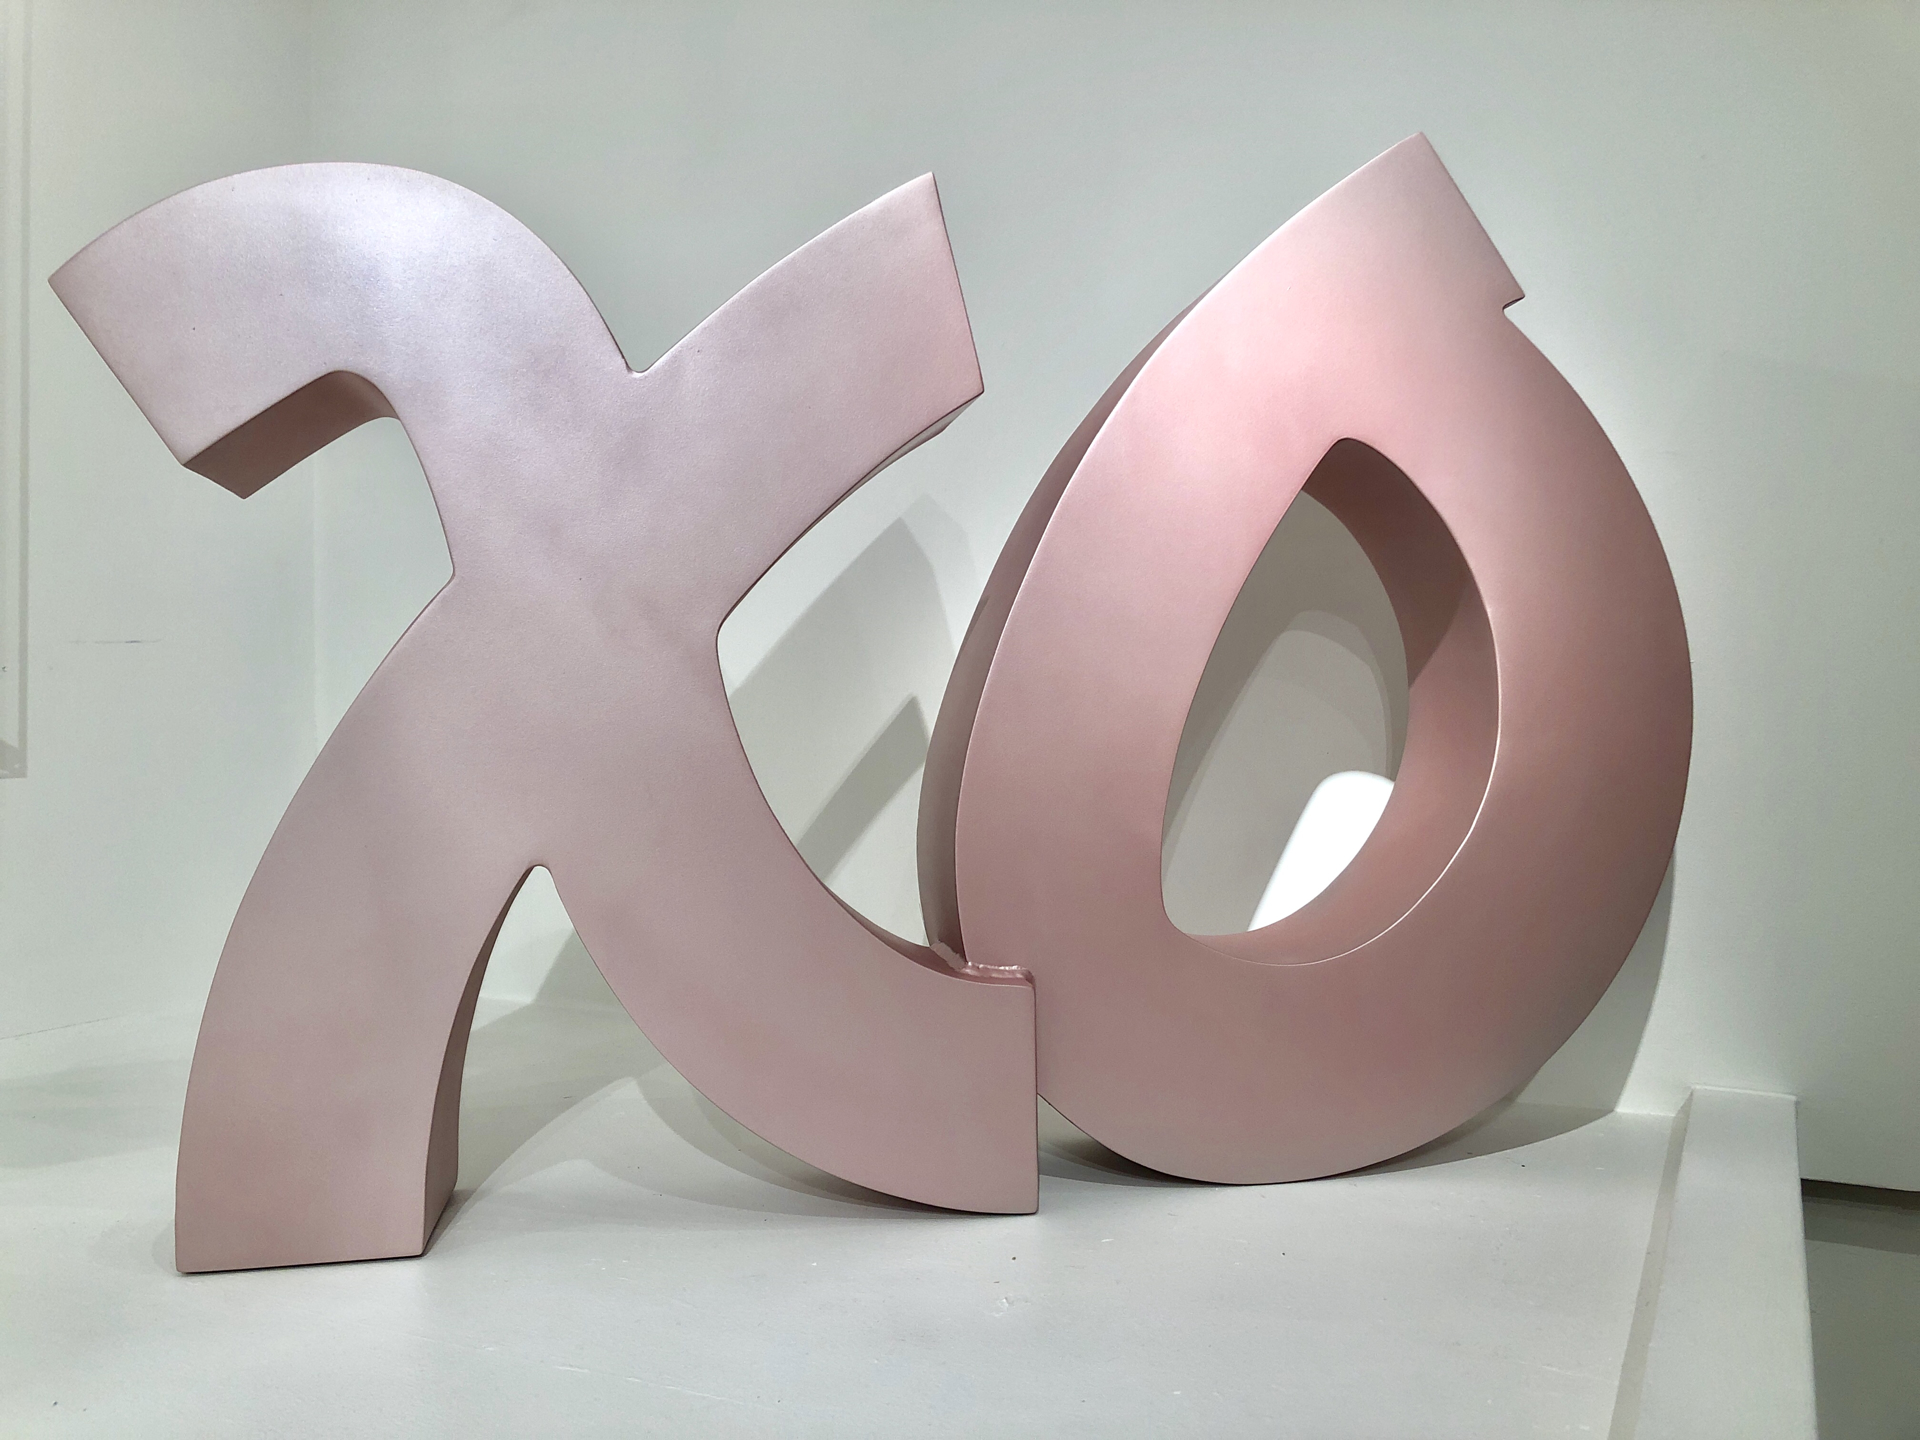 XO Sculpture by Tara Conley